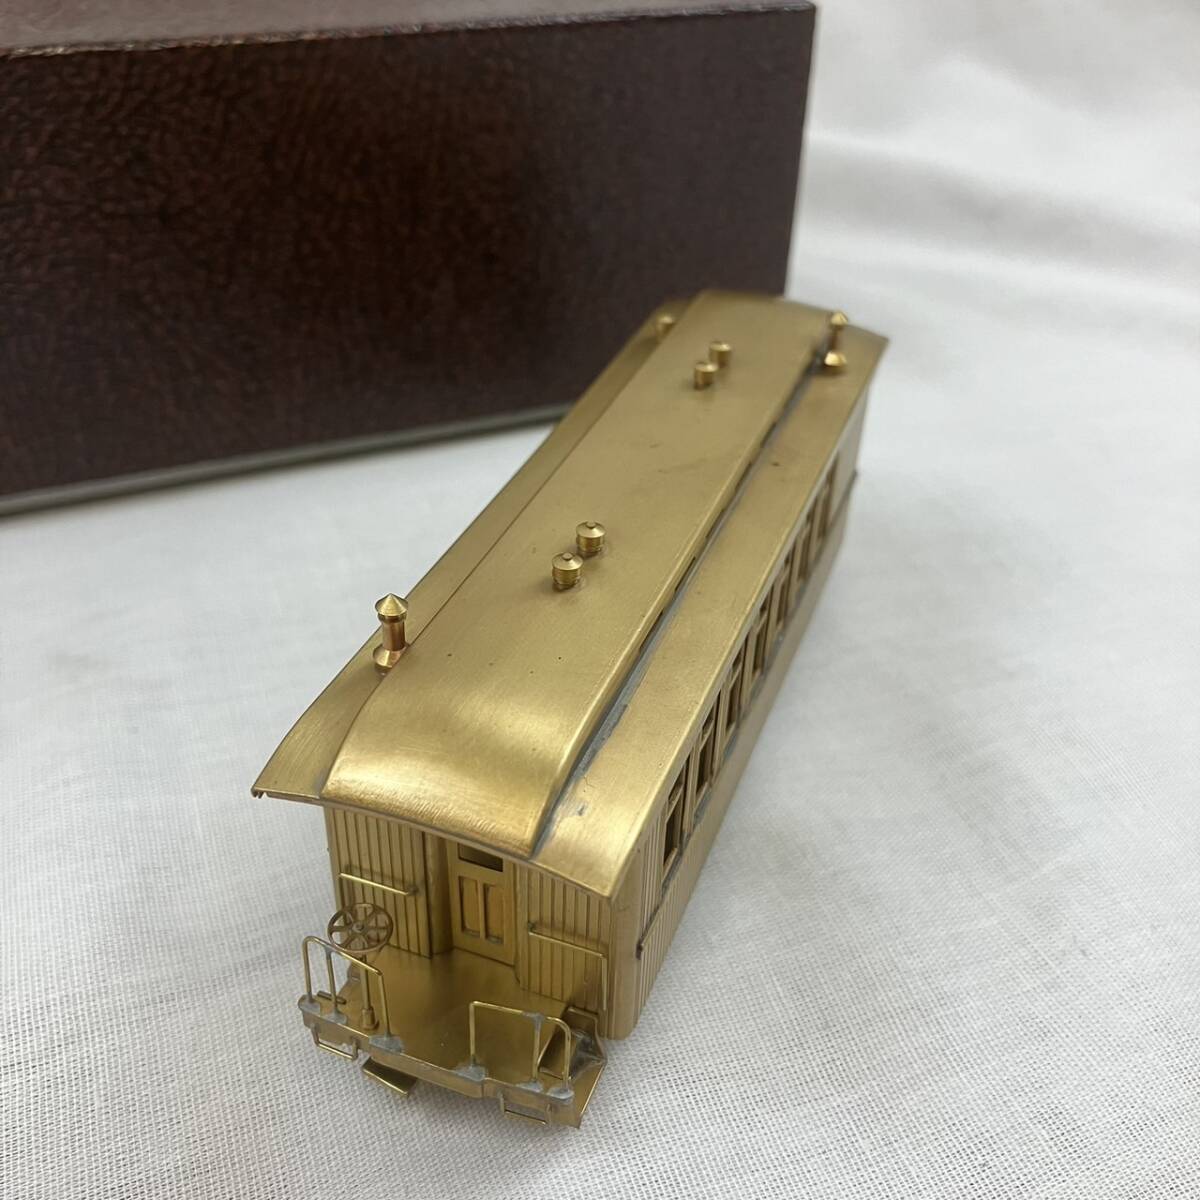 [5-165] железная дорога модель ряд машина груз золотой цвет Gold 